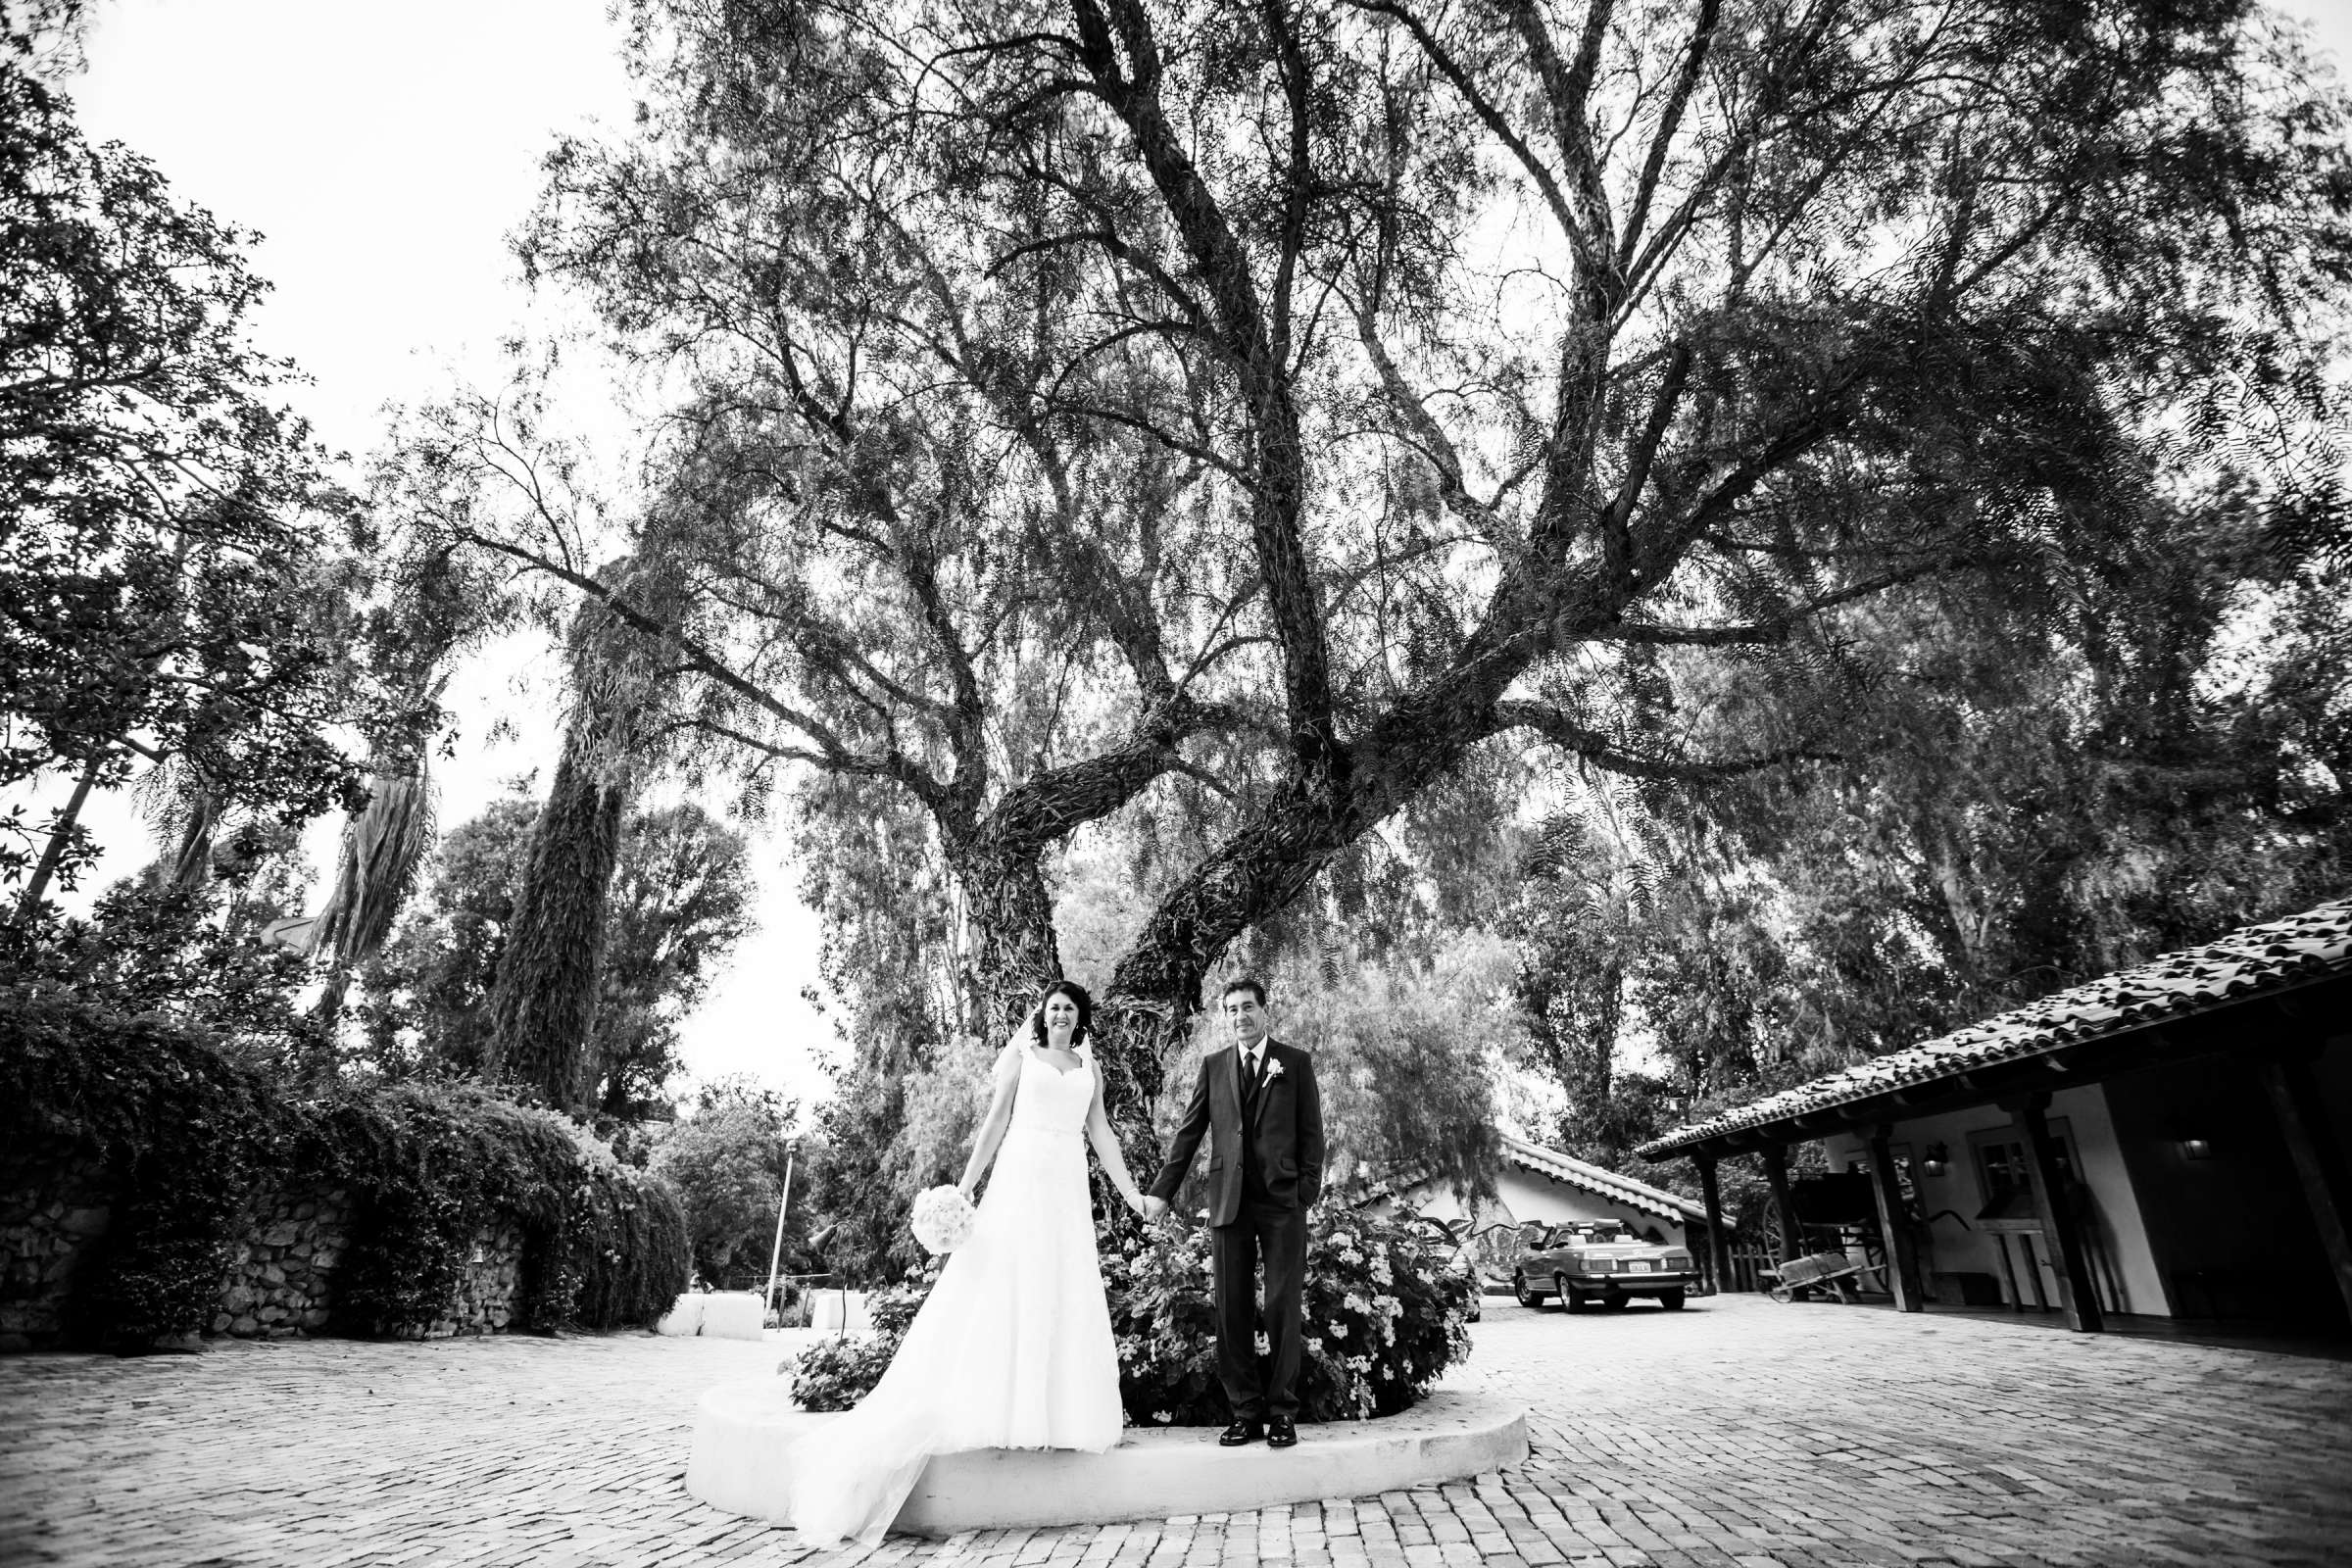 Rancho Buena Vista Adobe Wedding, Ellinor and Frank Wedding Photo #4 by True Photography